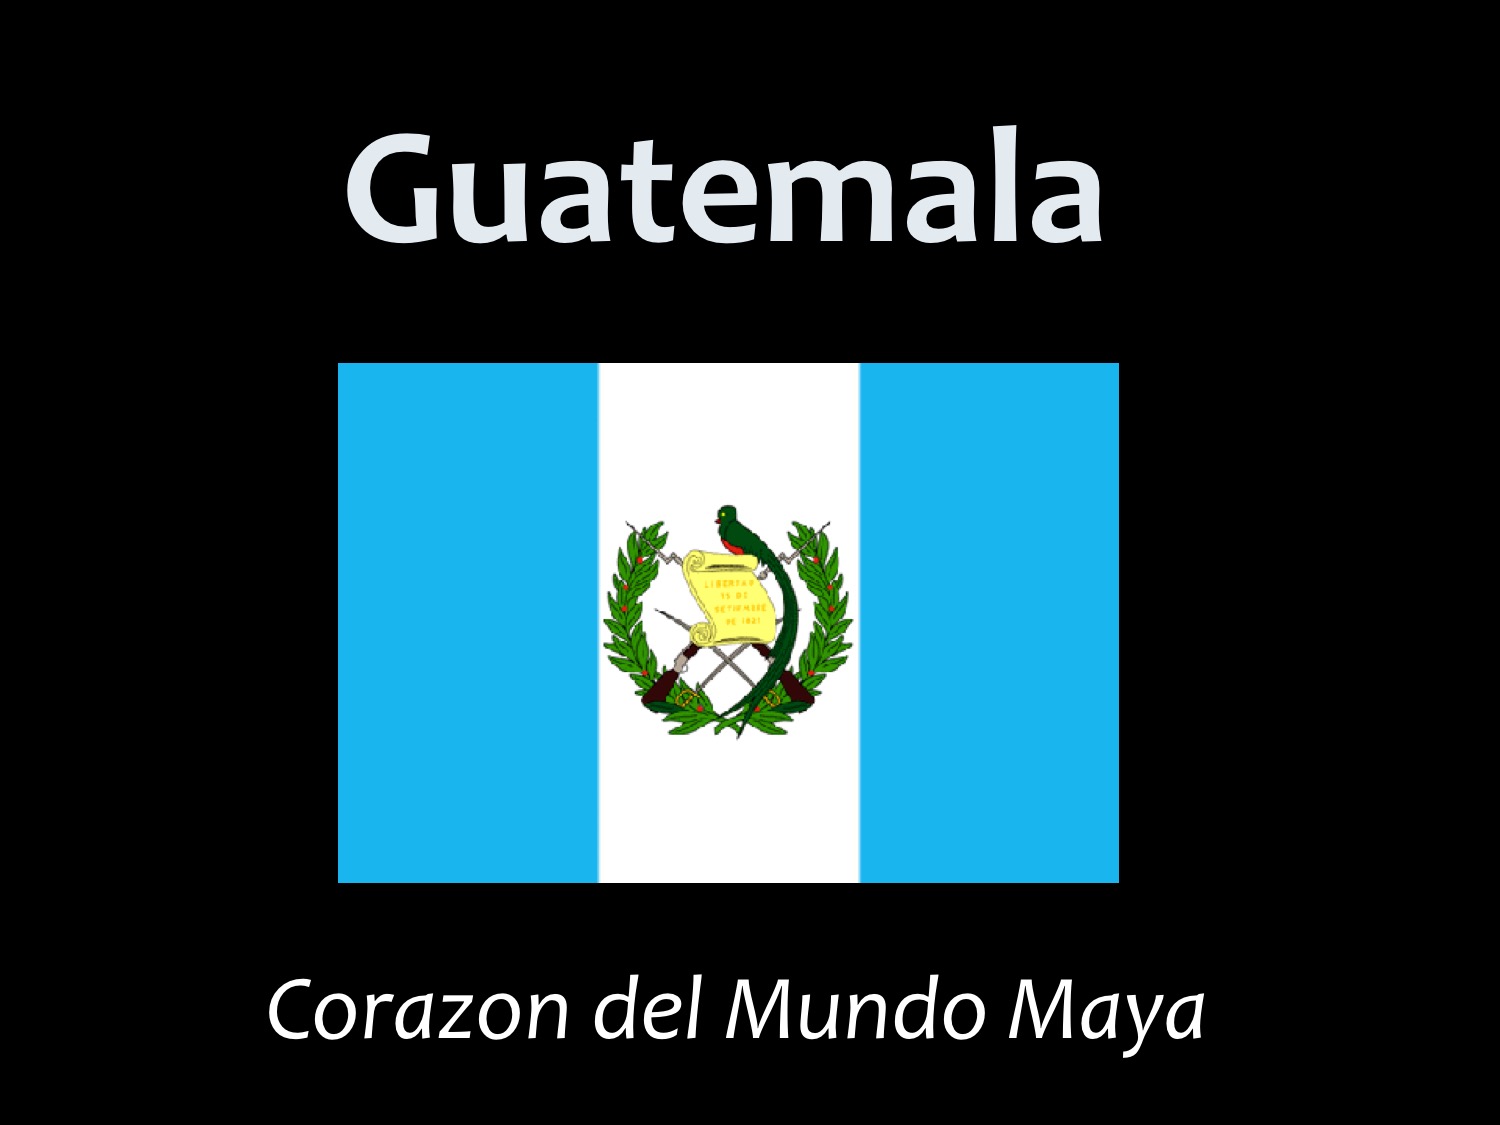 Media - About Guatemala